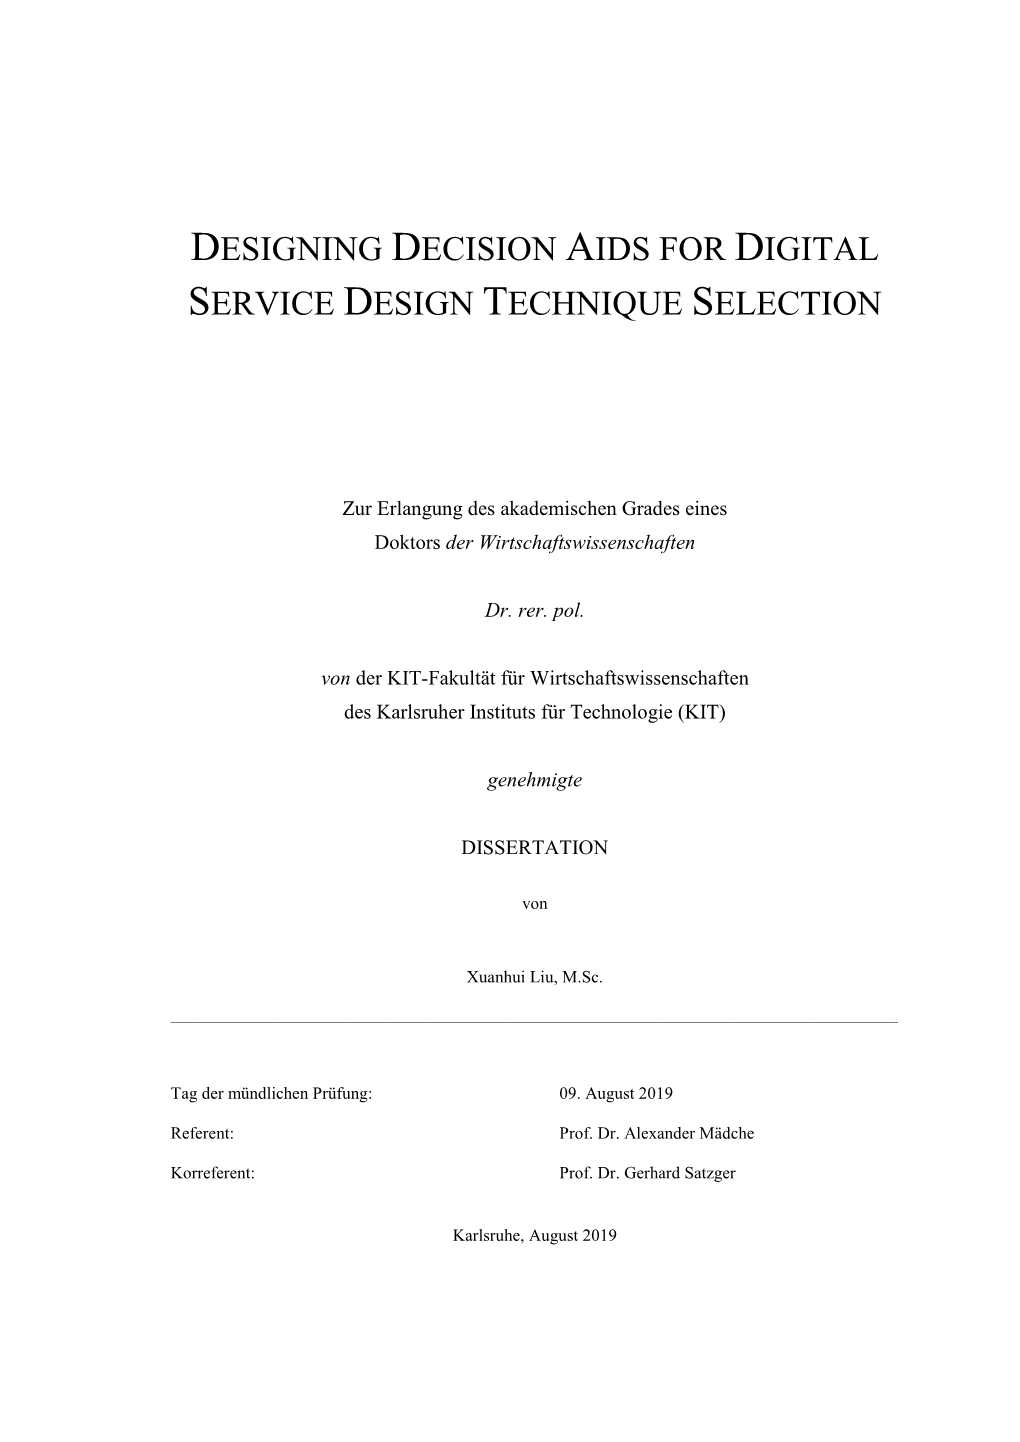 Designing Decision Aids for Digital Service Design Technique Selection